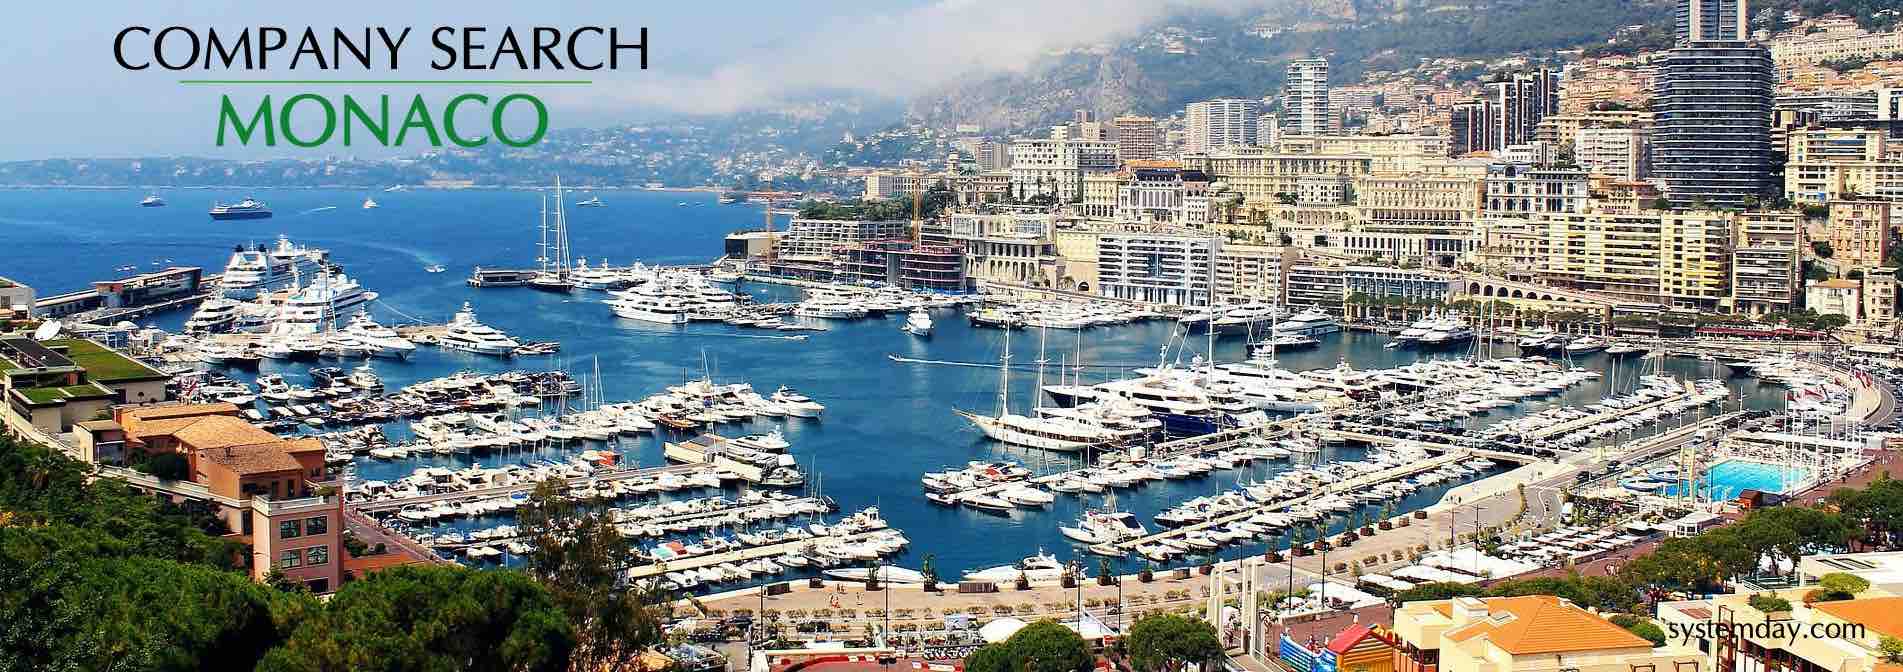 Monaco Company Search